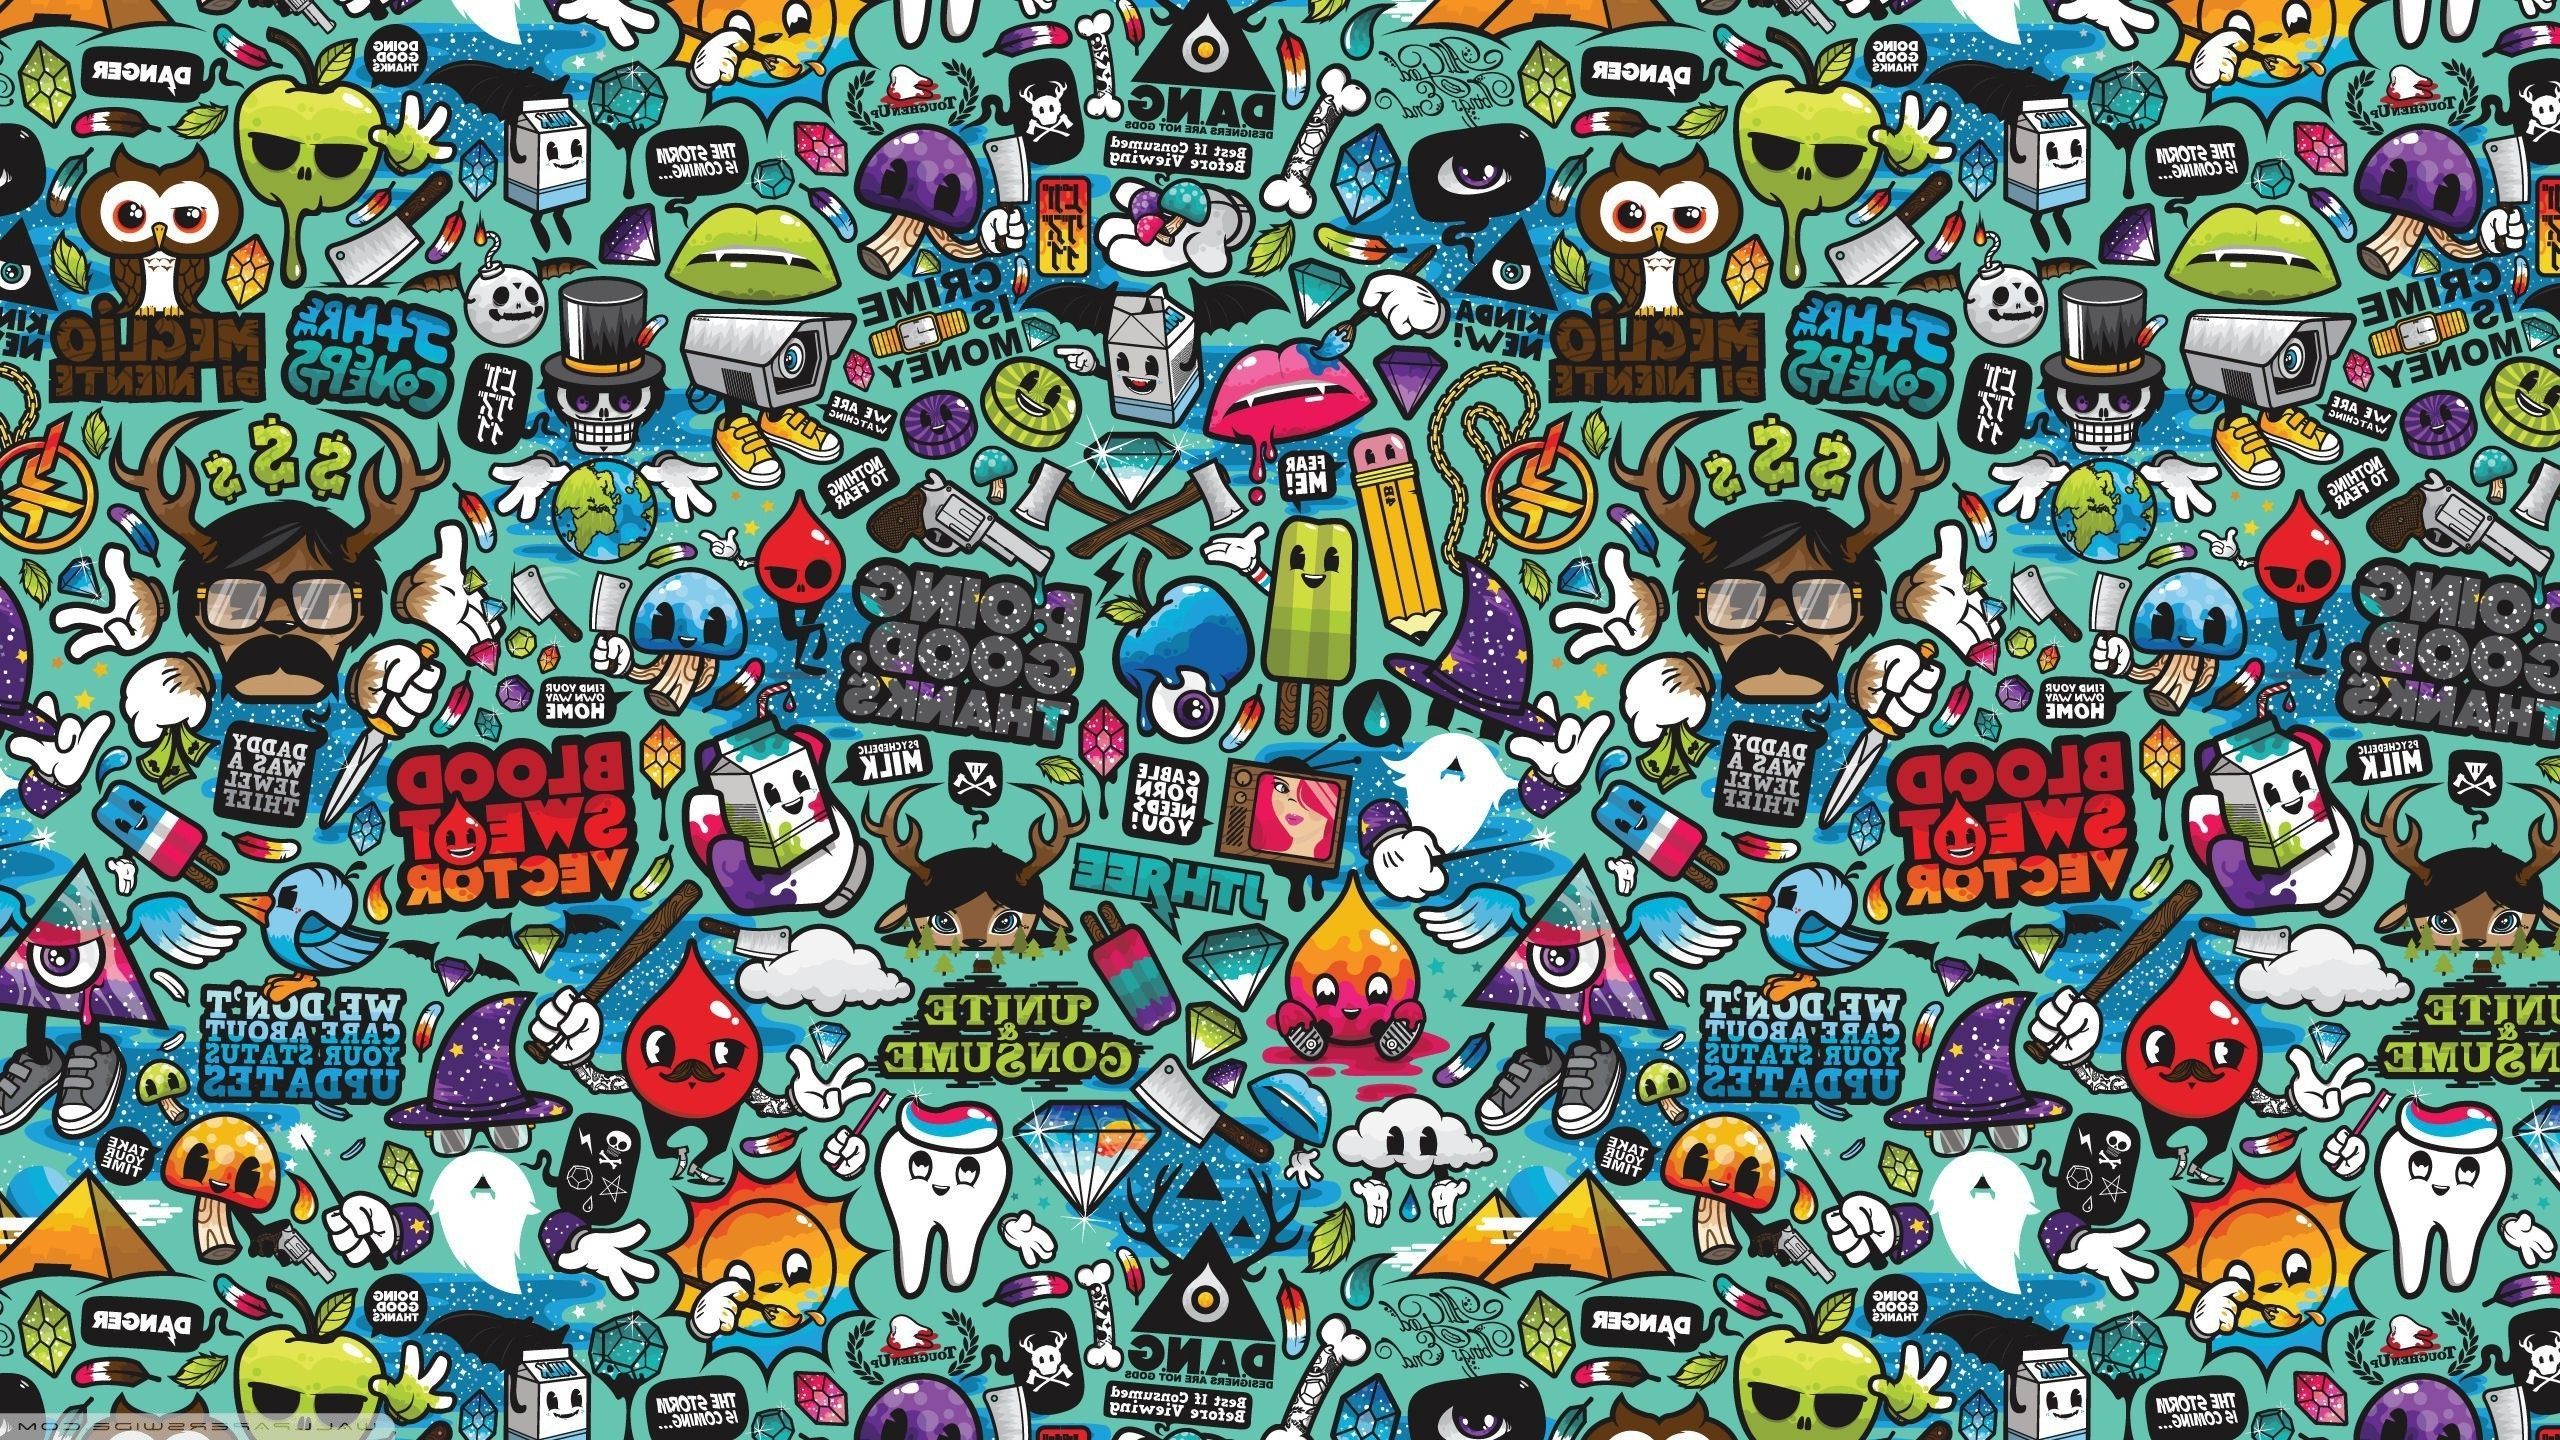 200+] Pop Art Wallpapers | Wallpapers.com